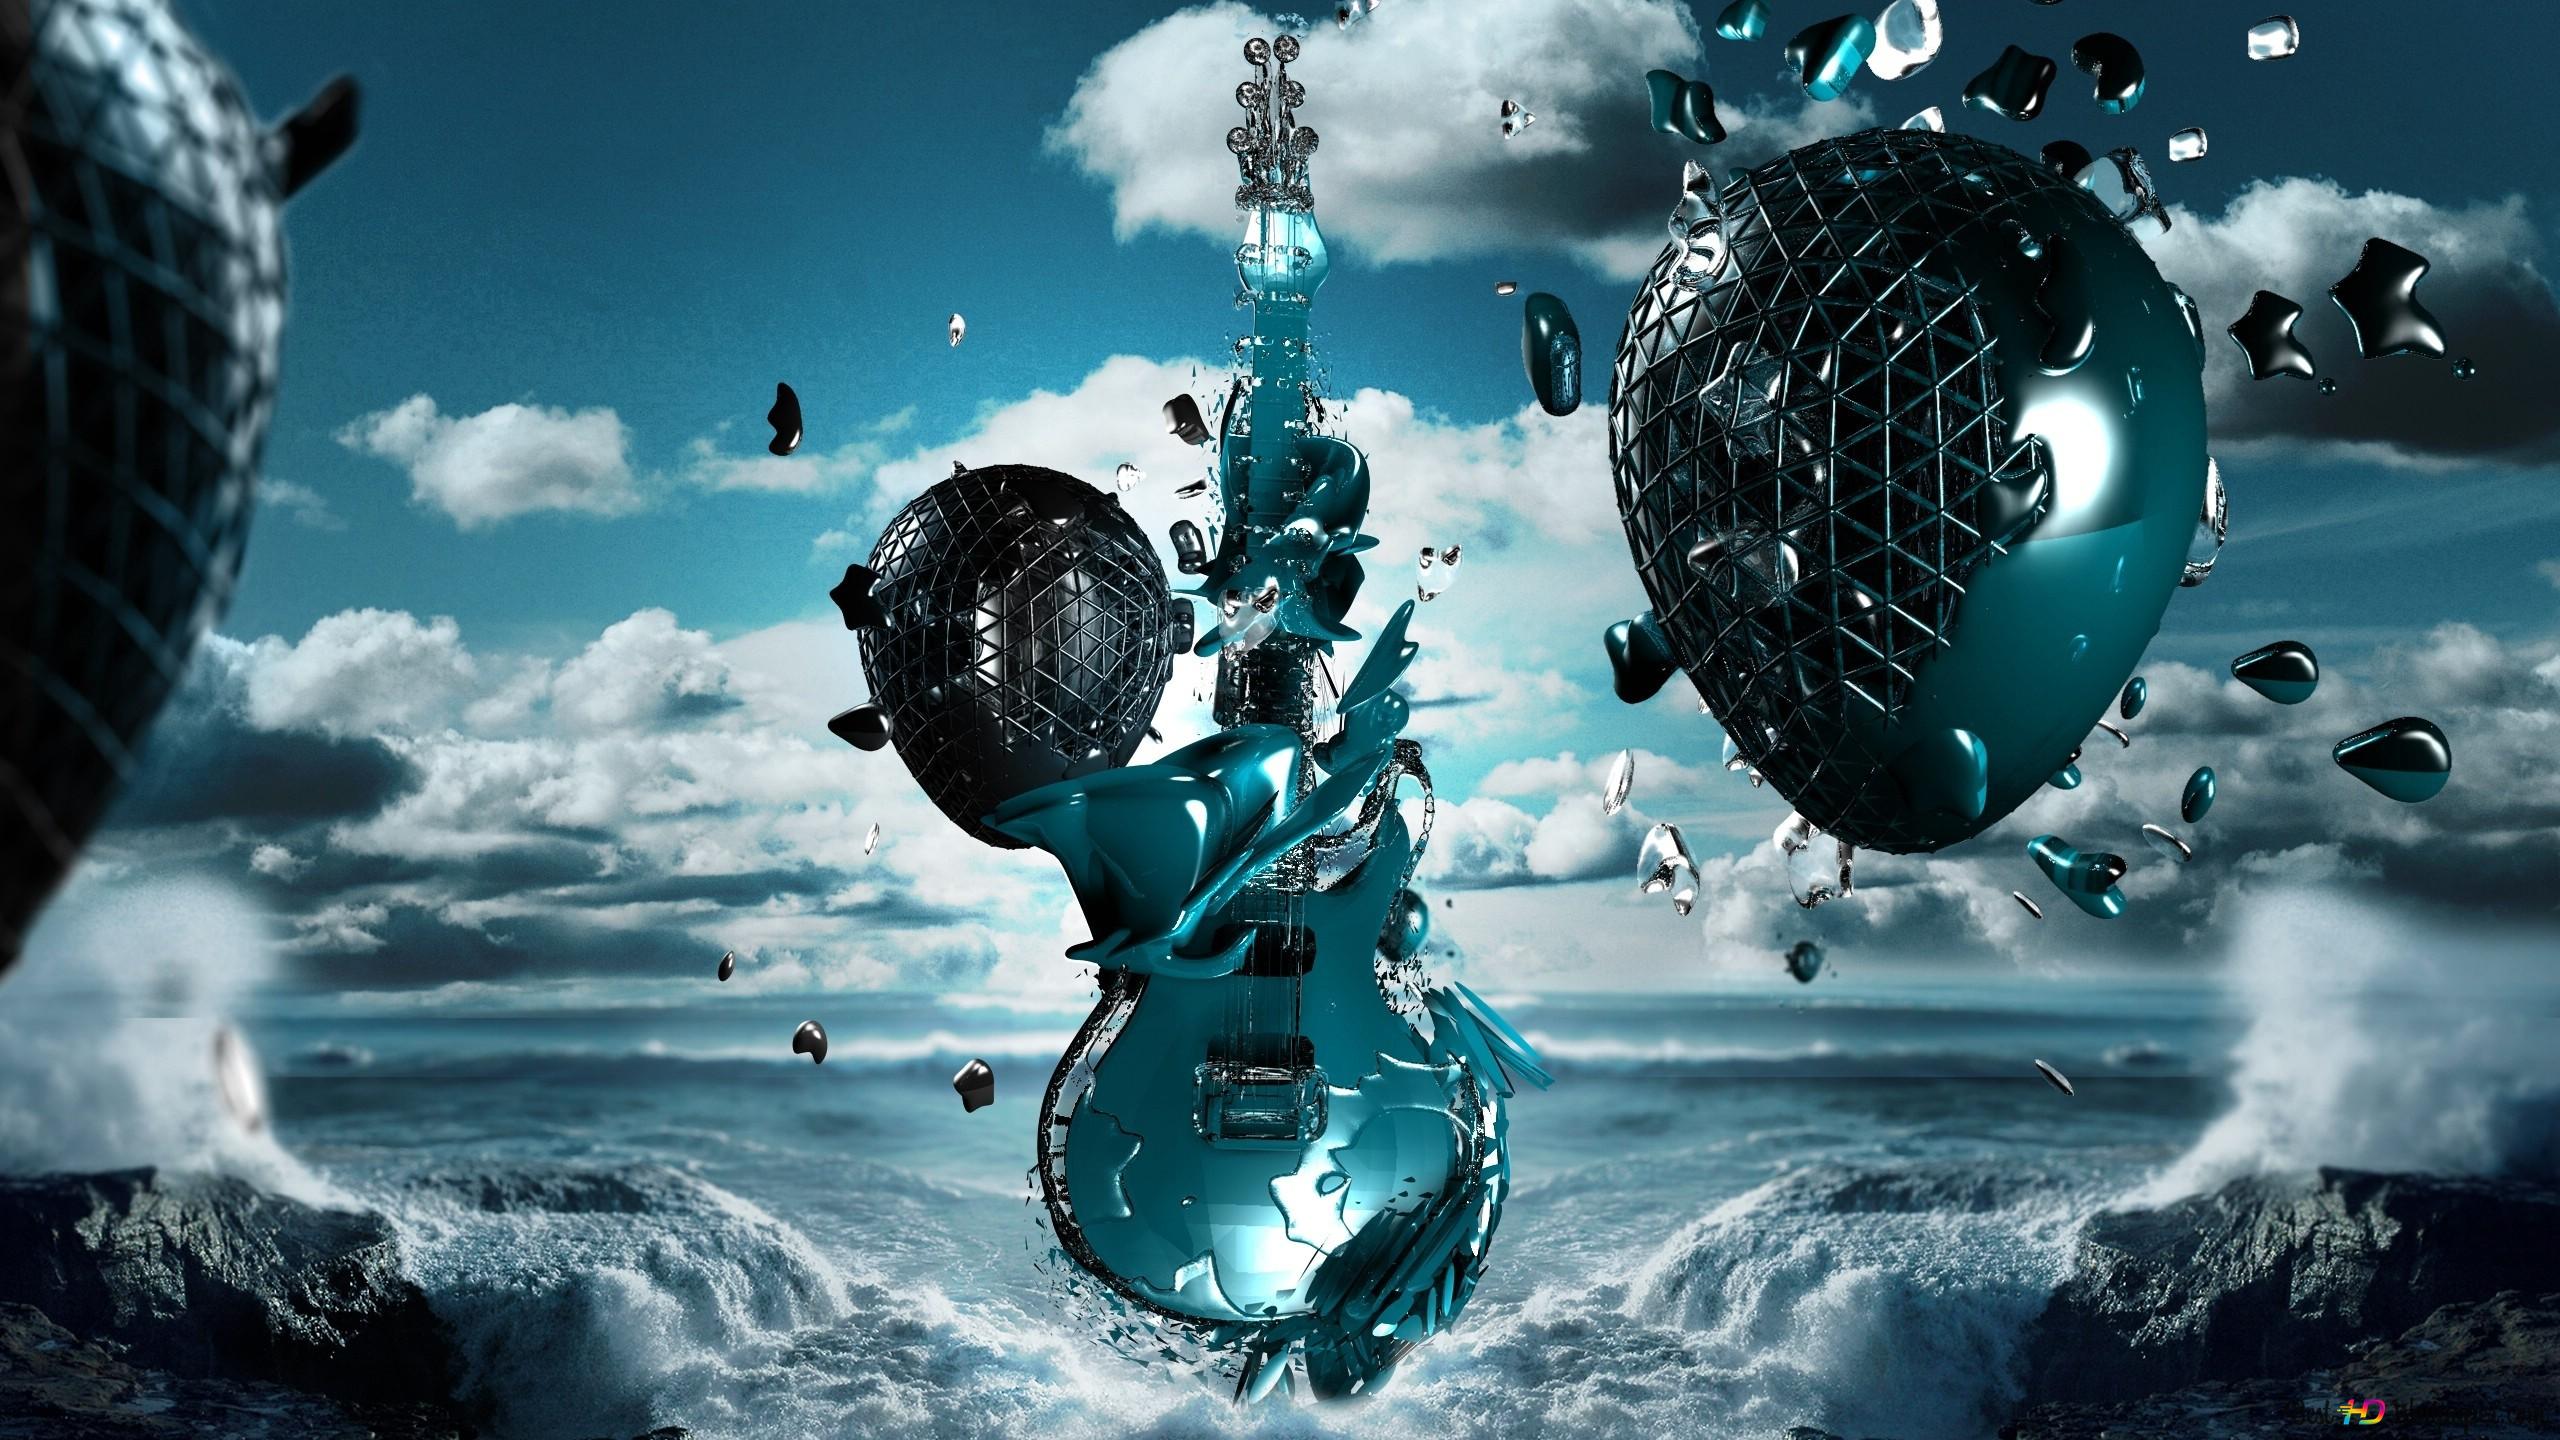 Rock music guitar k wallpaper download